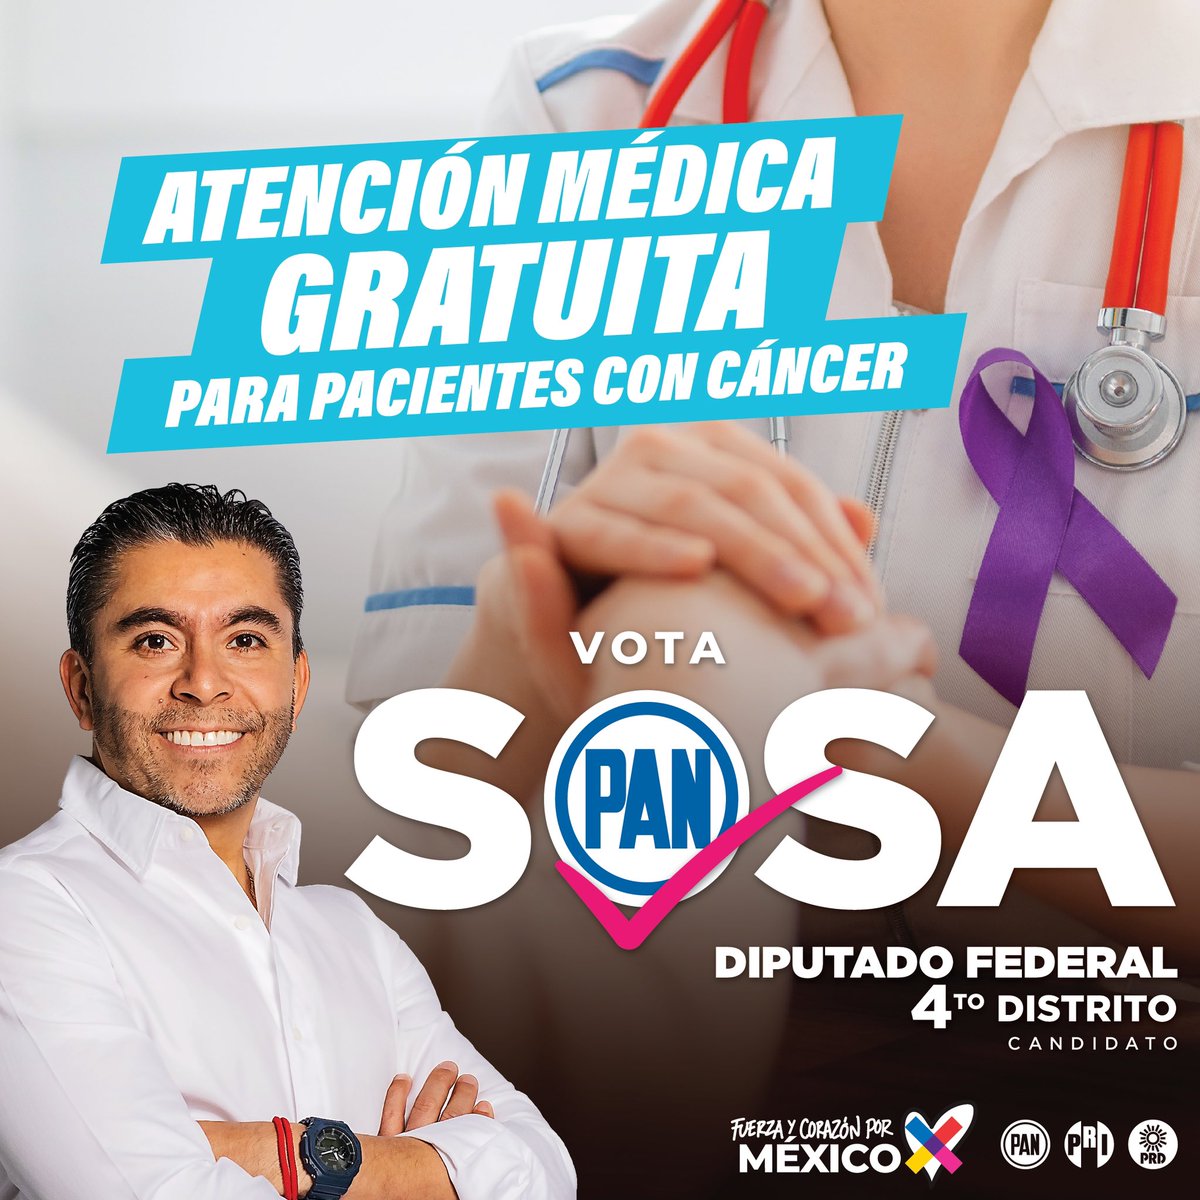 Legislaremos para mejorar el sistema de salud, las y los mexicanos que luchan contra el cáncer merecen tener medicamentos suficientes y una atención médica de calidad. #Propuestas #Querétaro #DiputadoFederal